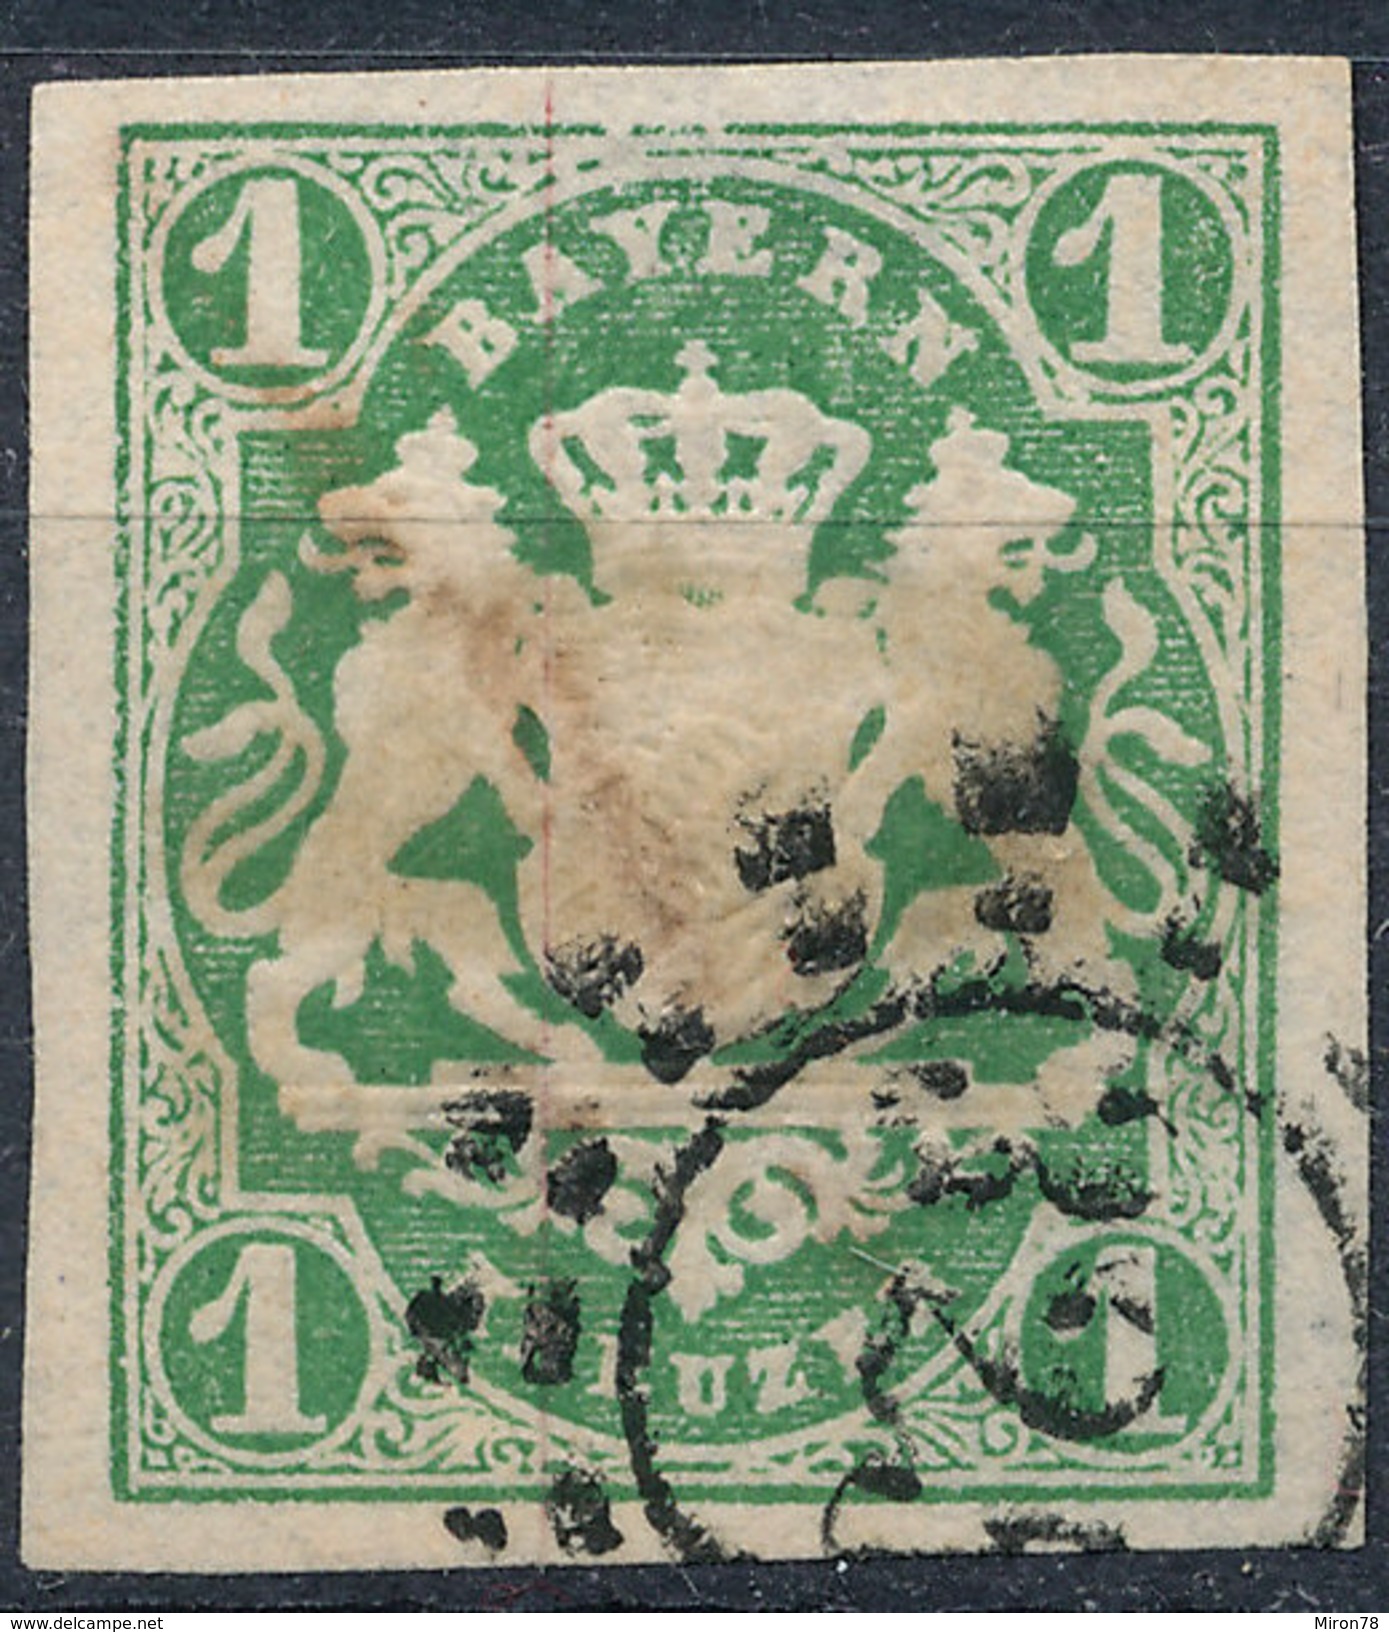 Stamp German States Bavaria 1kr 1867 Used Lot#37 - Used